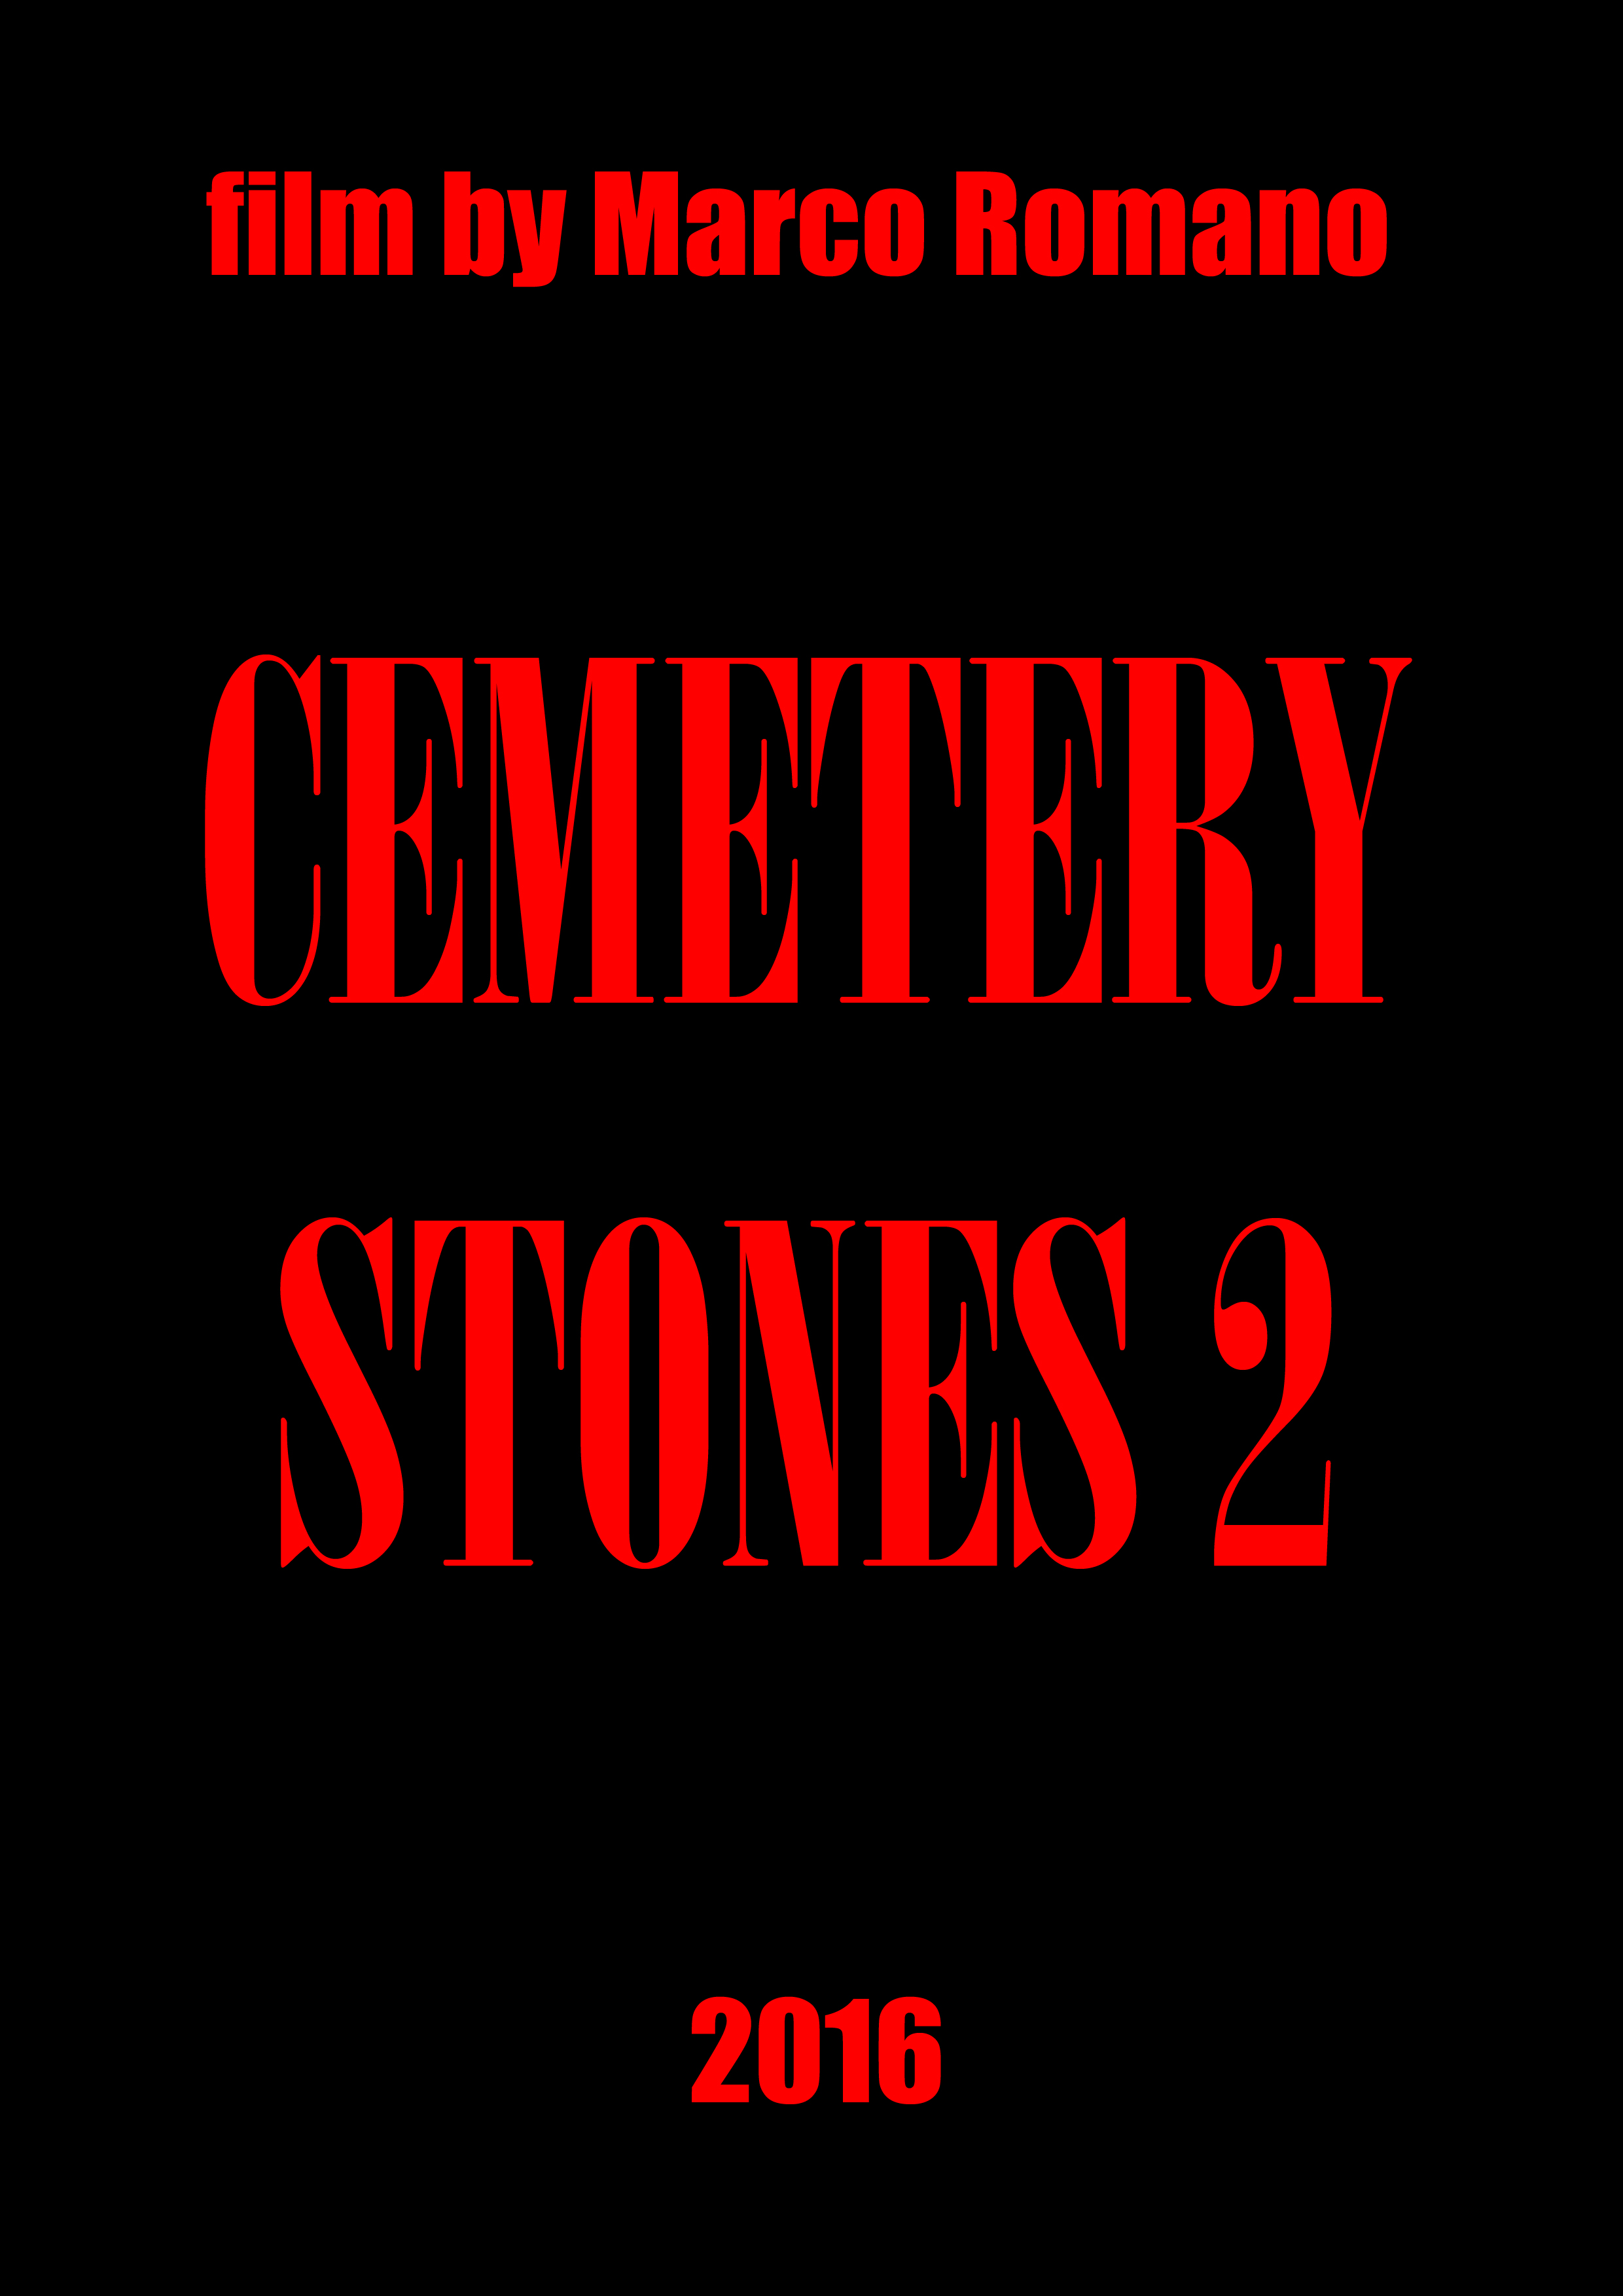 Cemetery Stones 2 (2016)